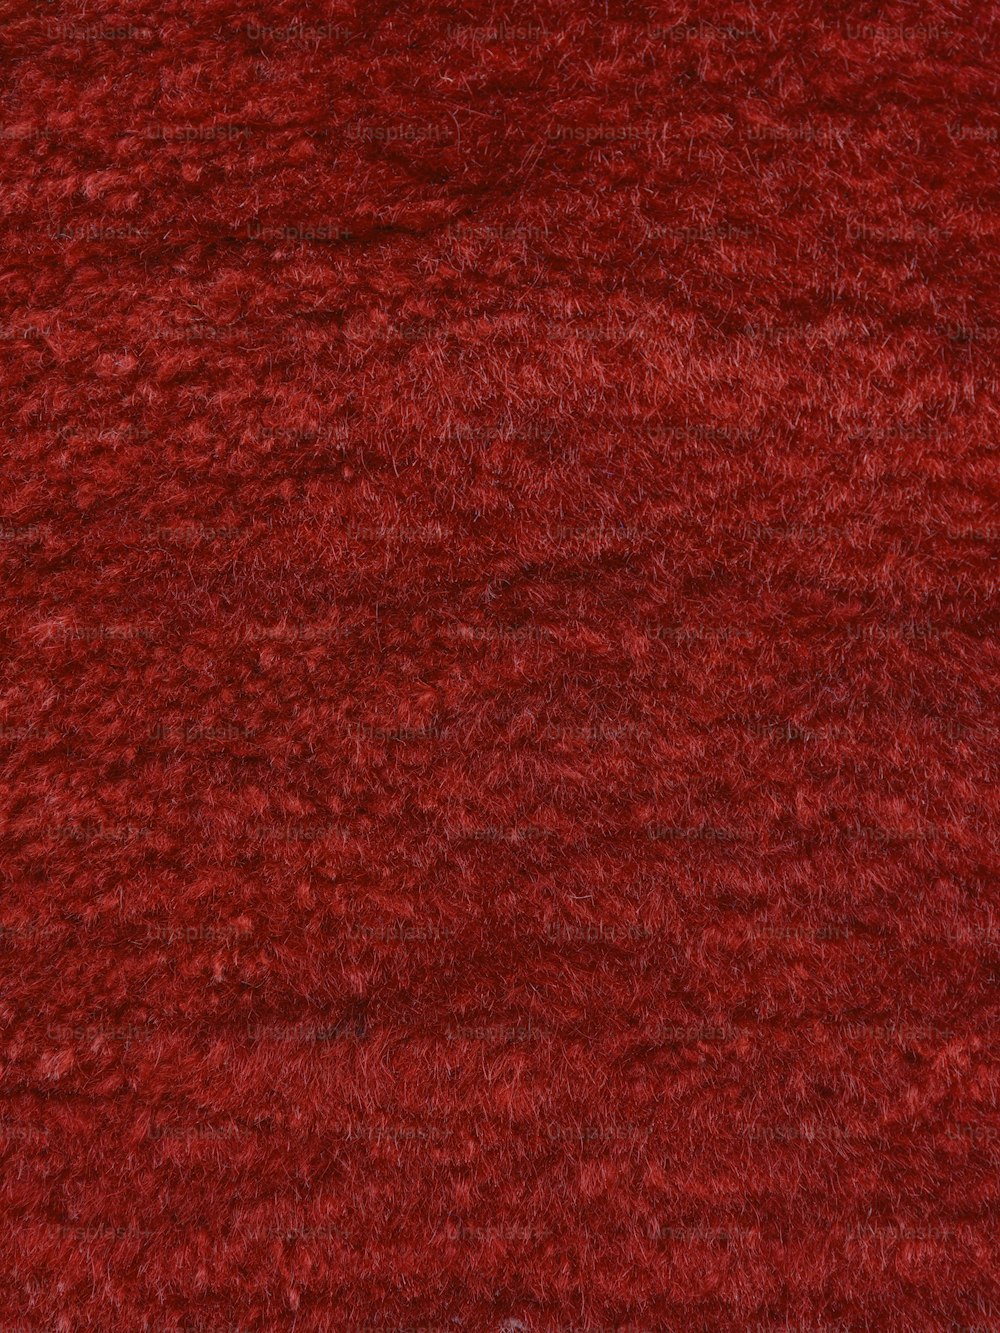 Un primer plano de una alfombra roja